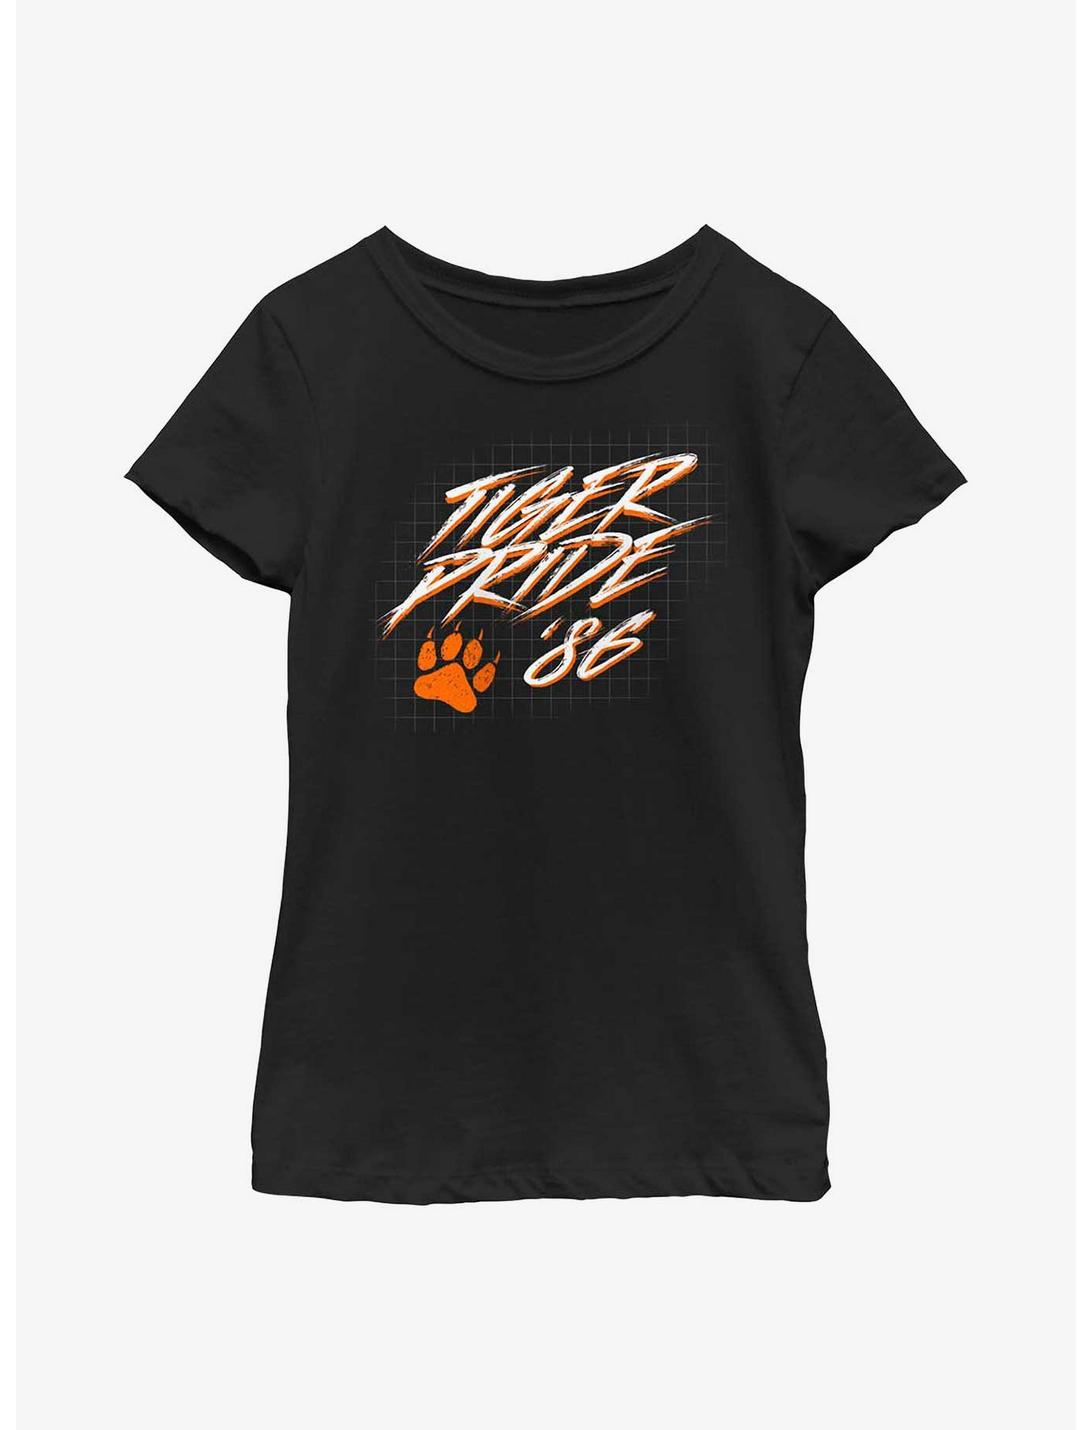 Stranger Things Tiger Pride Youth Girls T-Shirt, BLACK, hi-res